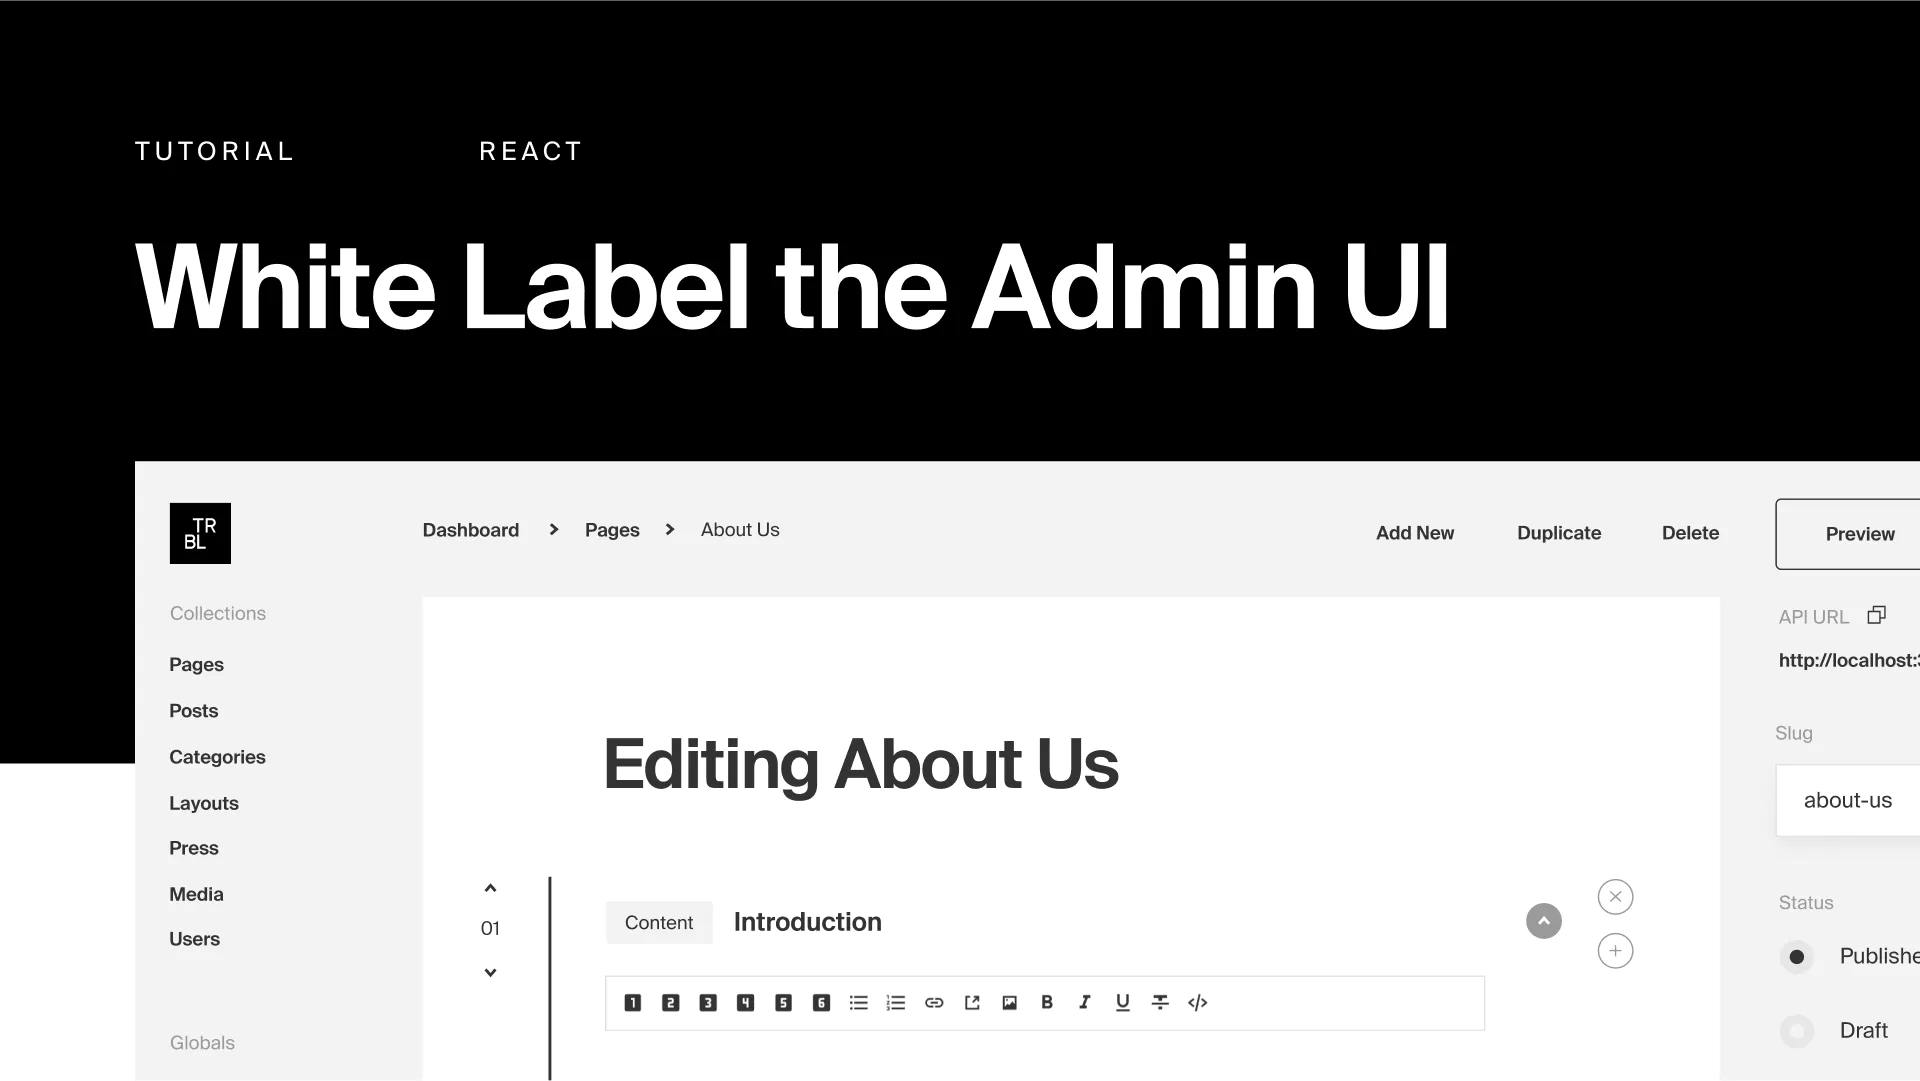 White Label the Admin UI